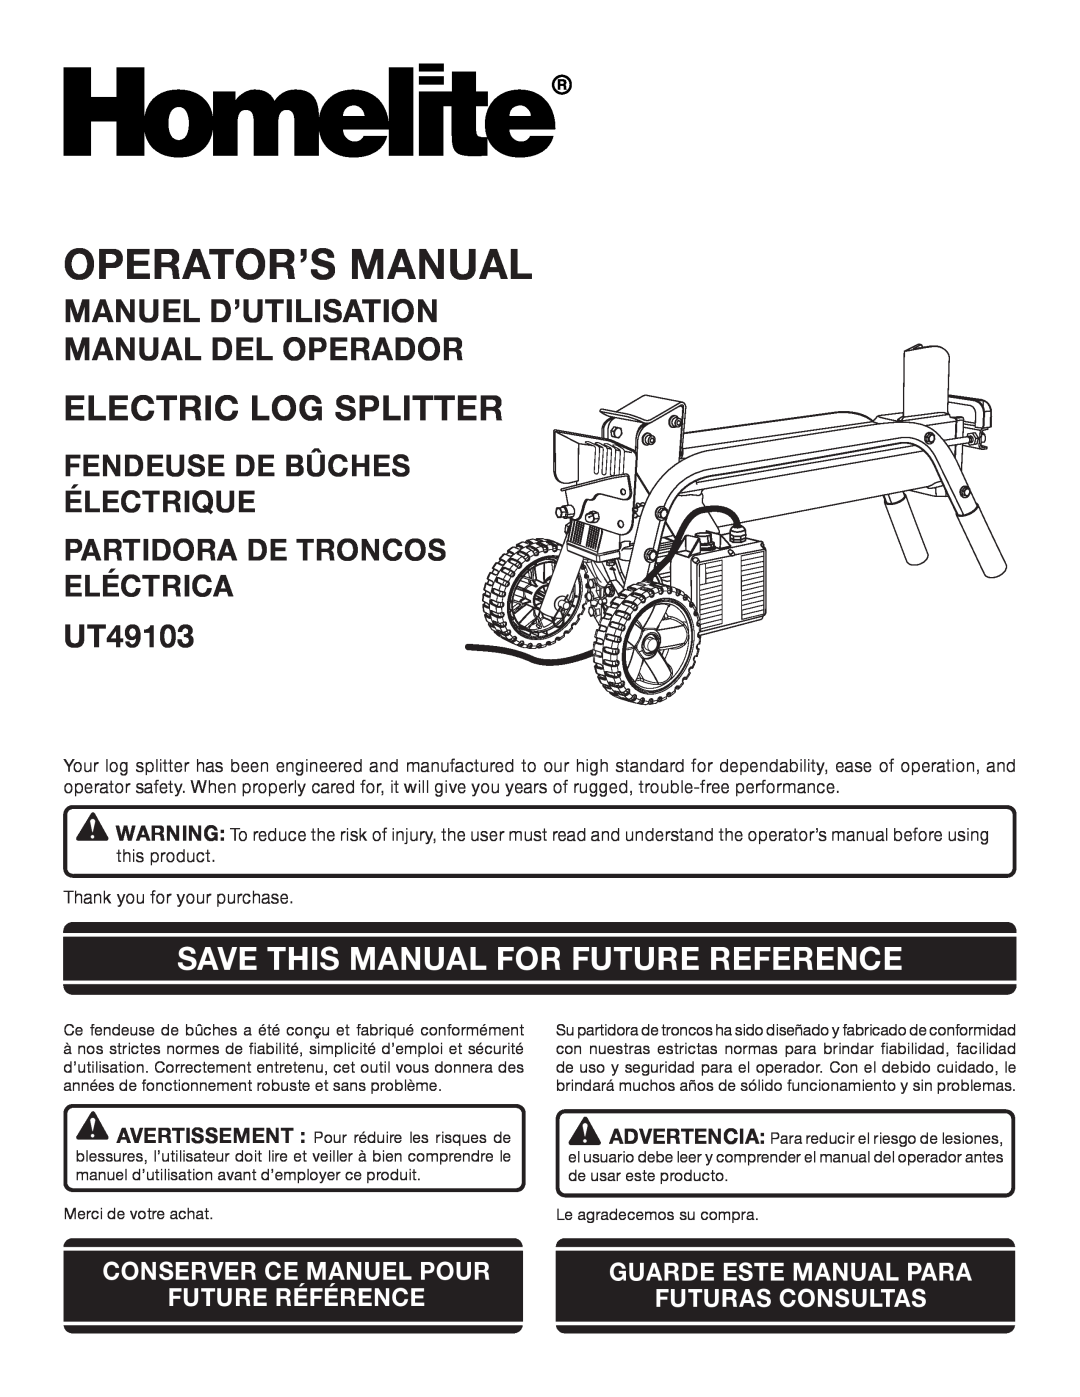 Homelite UT49103 manuel dutilisation Manuel D’Utilisation Manual Del Operador, Save This Manual For Future Reference 